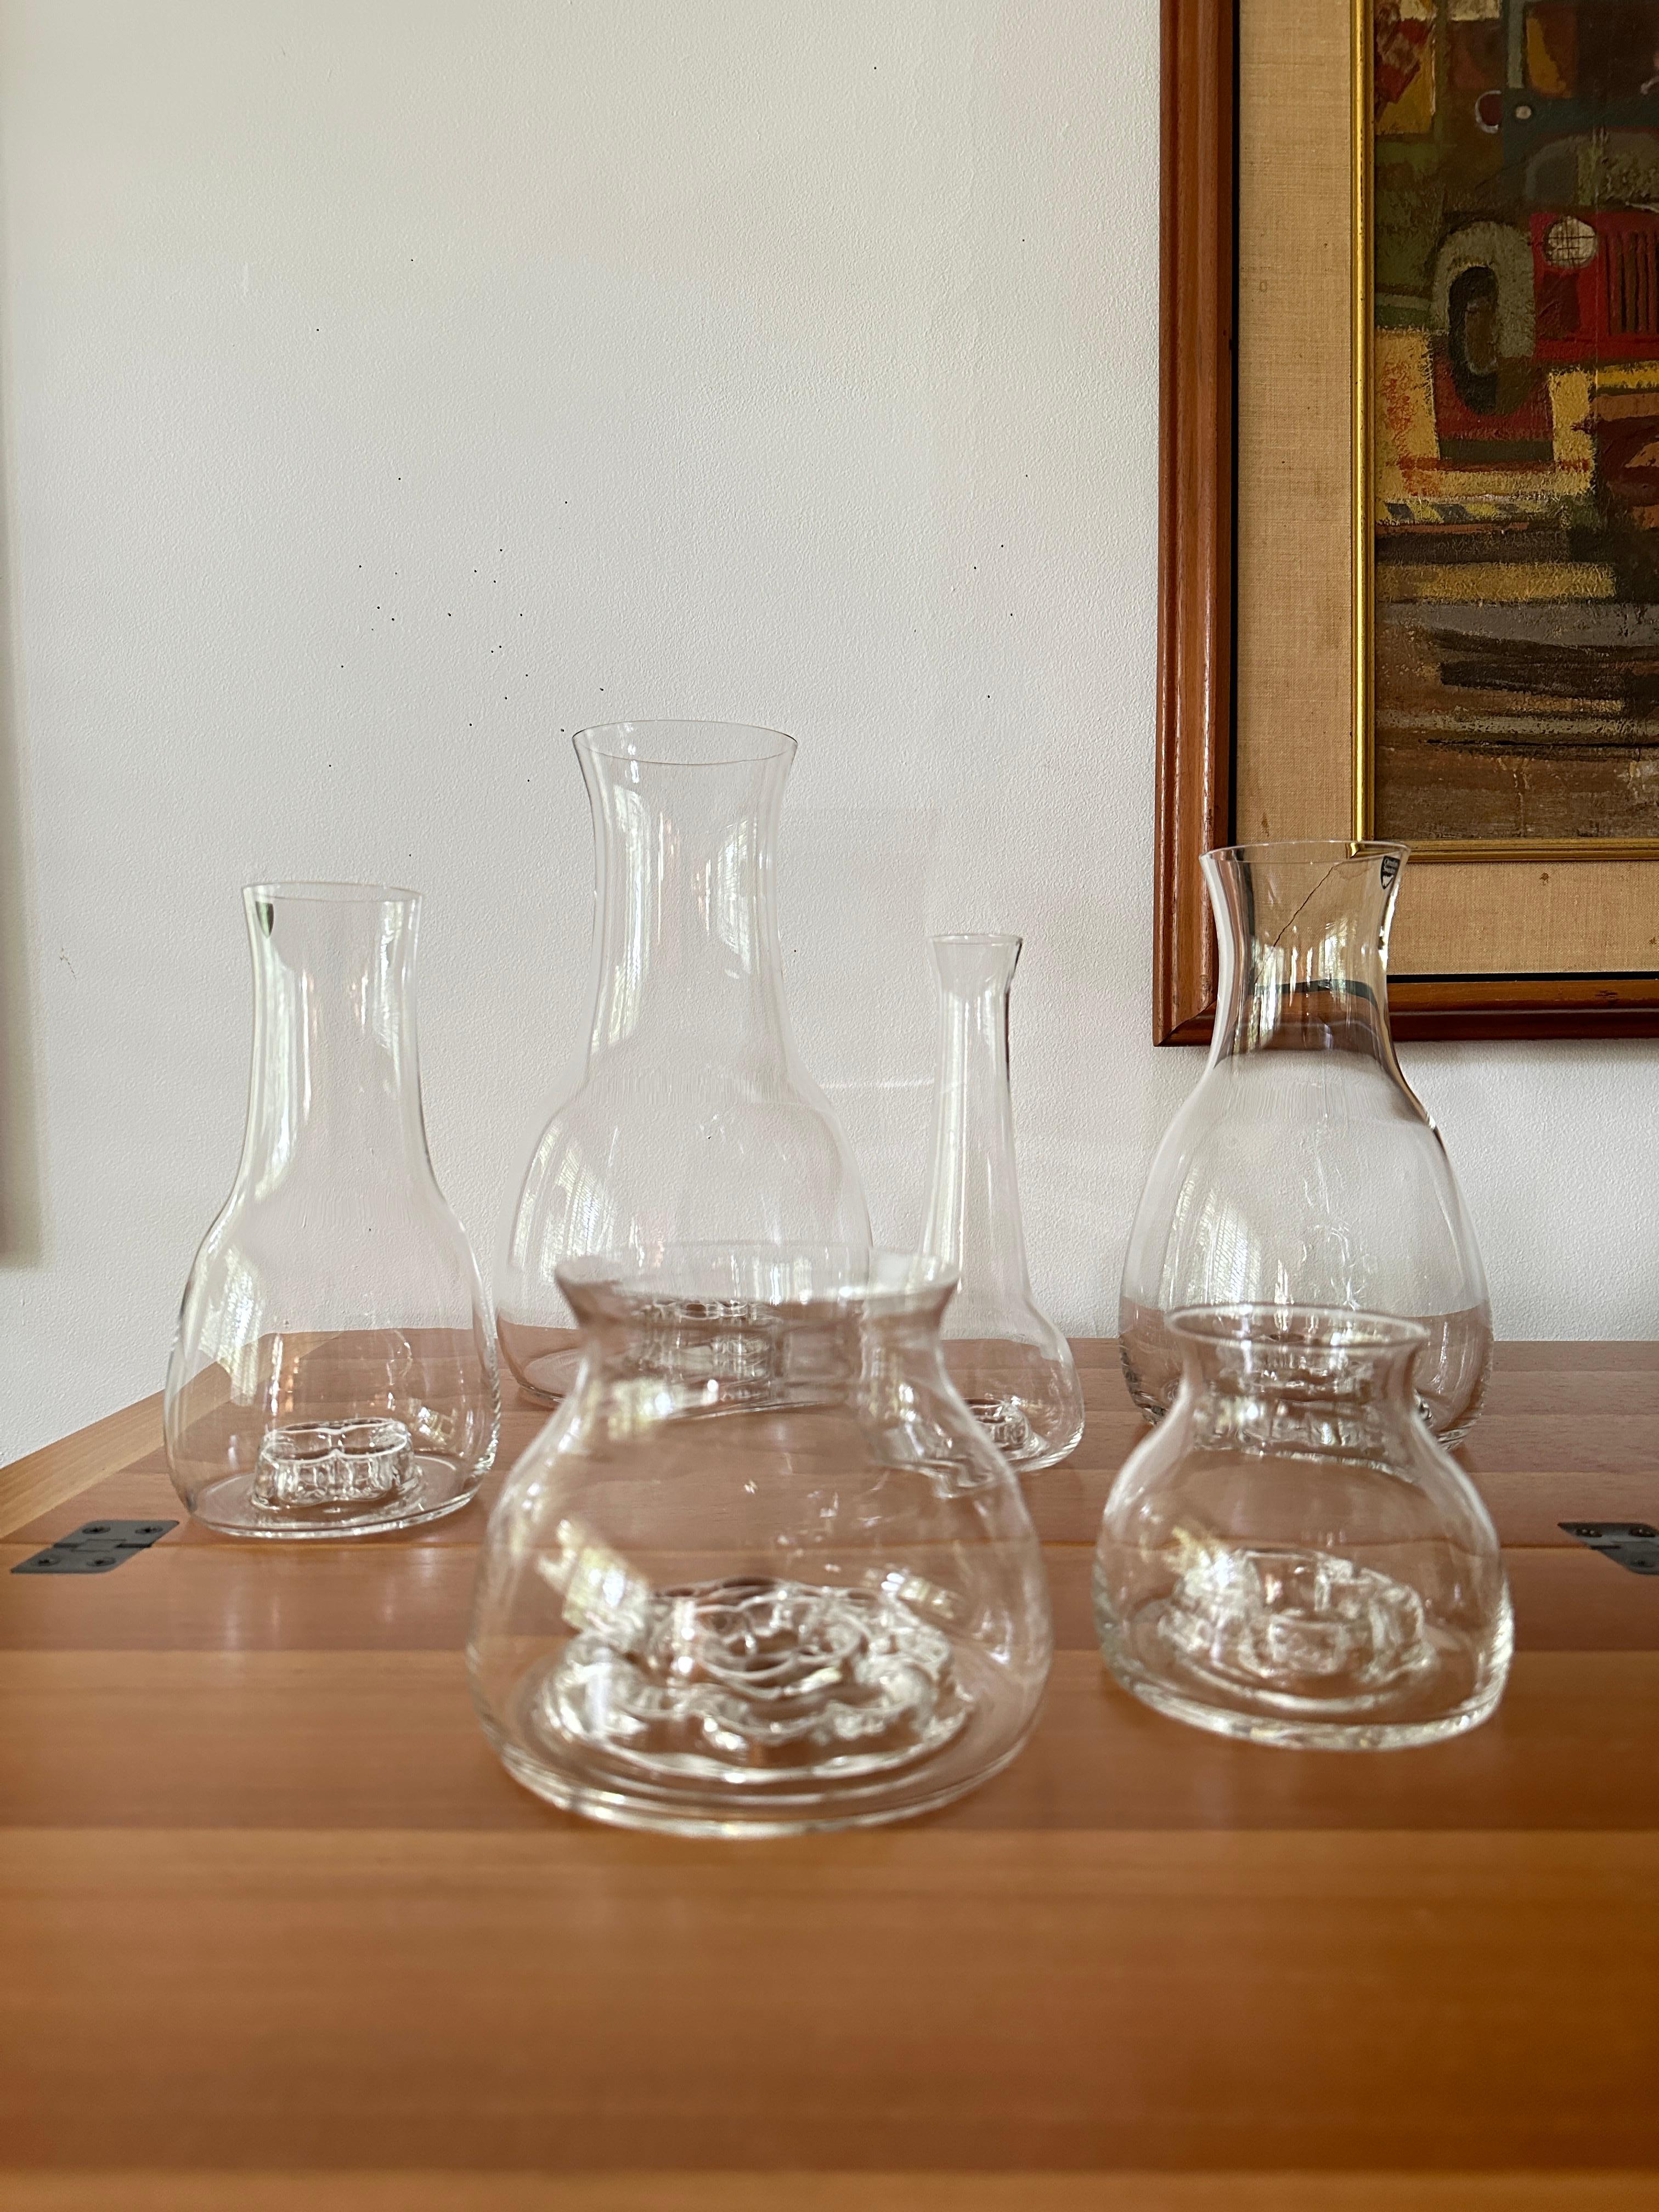 DESCRIPTION

Six vases Flora en verre clair Orrefors, soufflés à la main, conçus par Olle Alberius dans les années 1970. Les vases sont dotés d'une grenouille de fleur unique moulée dans la base.

Né en 1926 en Suède, le verrier et céramiste Olle